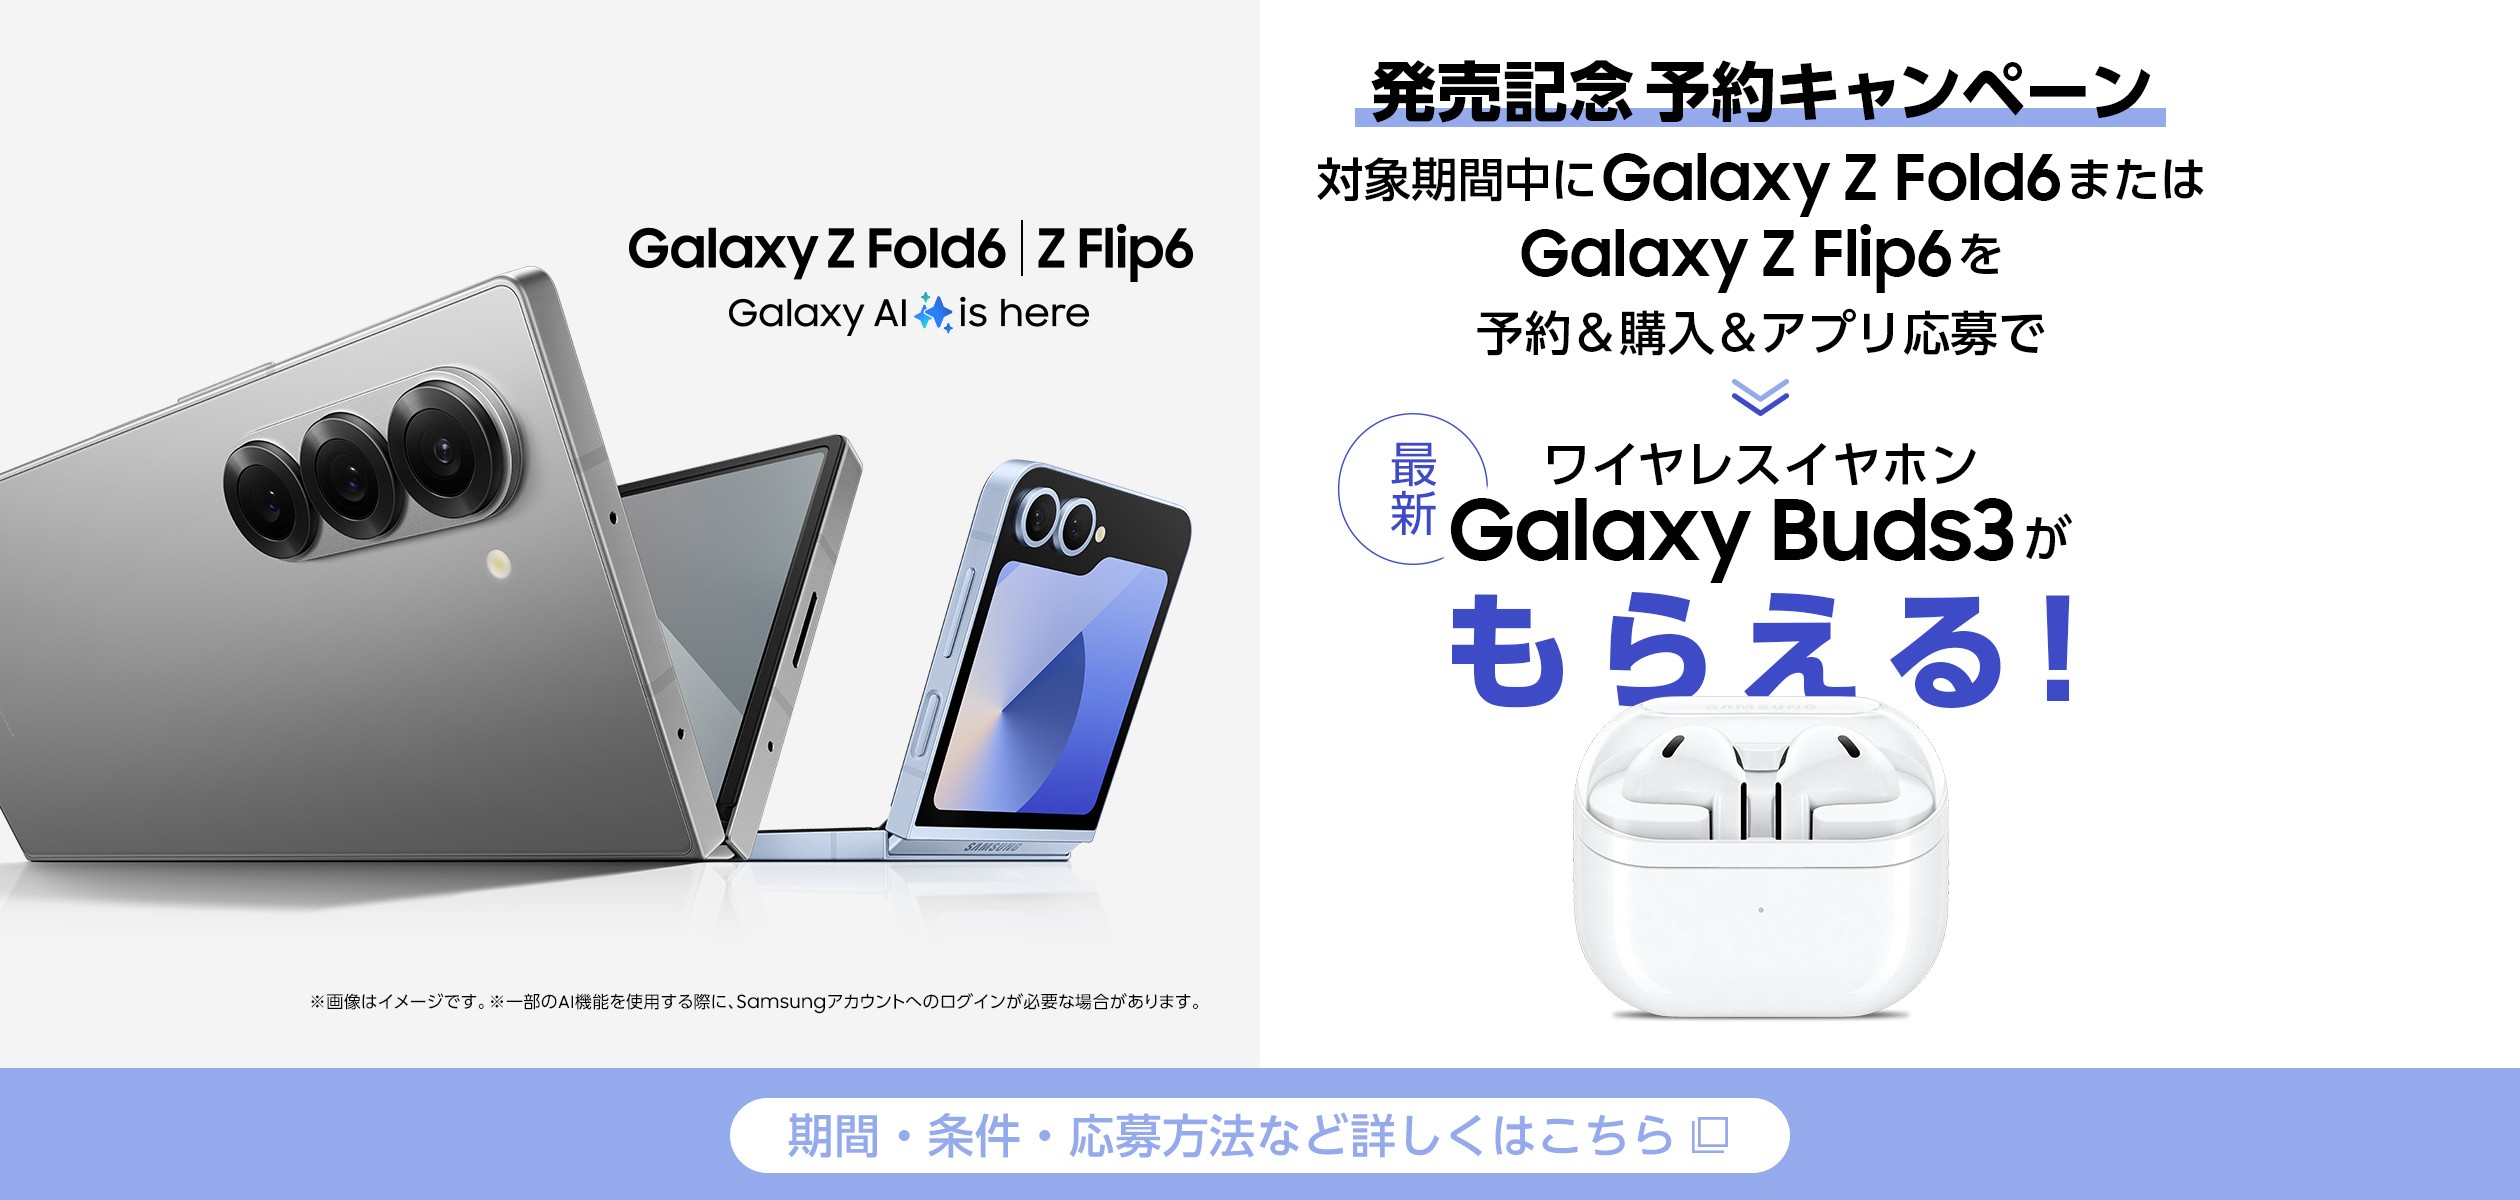 Galaxy Z Fold6・Galaxy Z Flip6の発売記念キャンペーンページに遷移するバナー